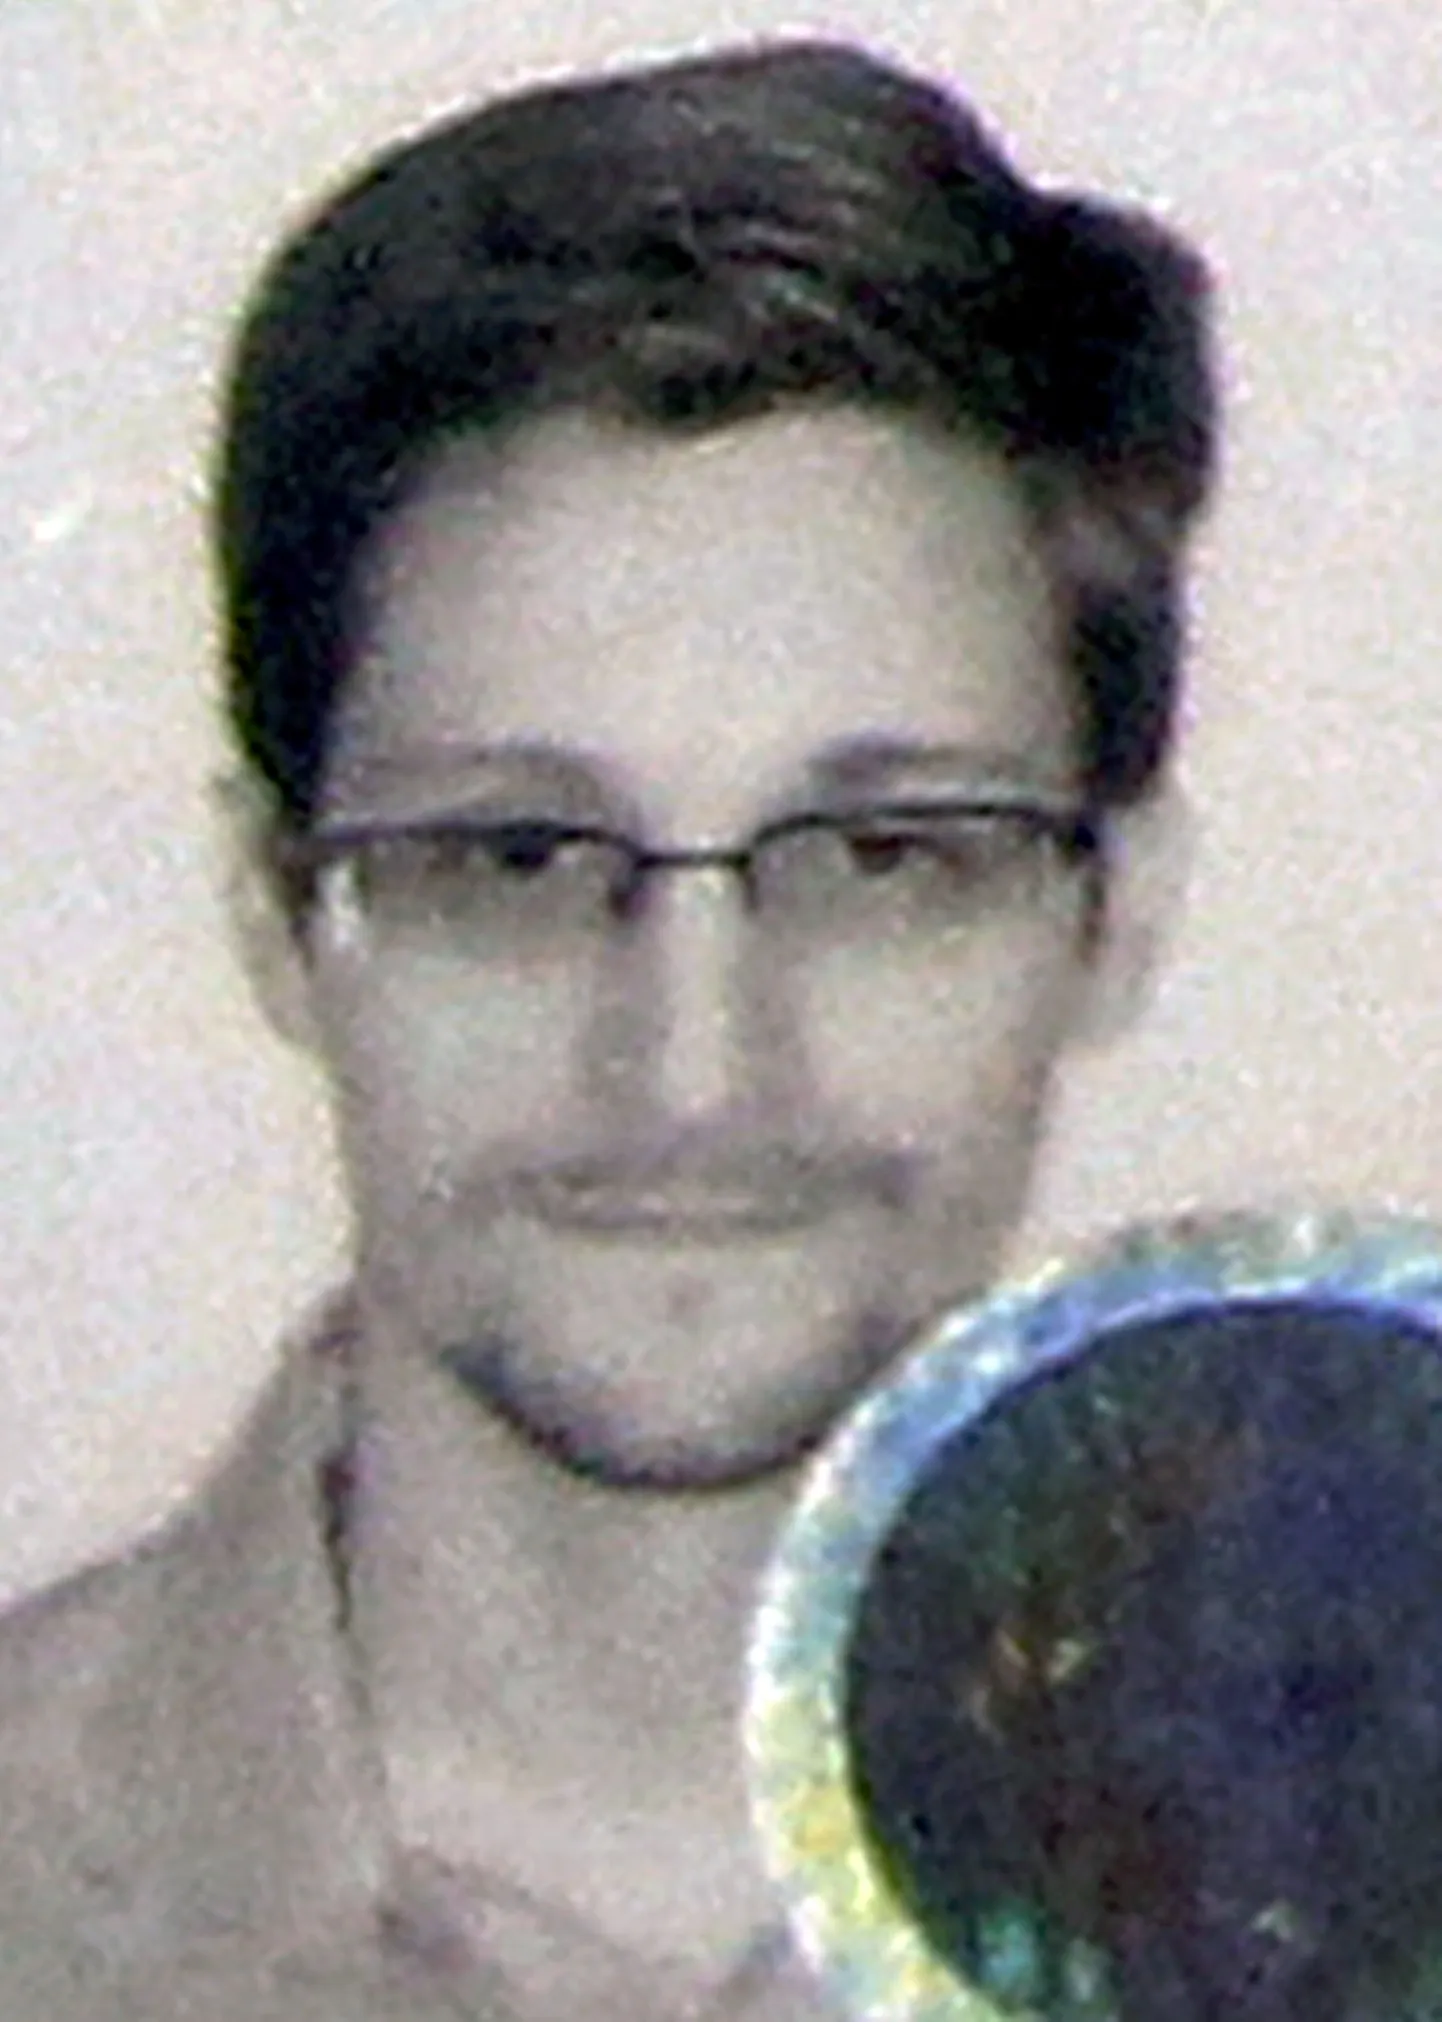 Edward Snowdenile Venemaal välja antud isikut tõendava dokumendi pilt